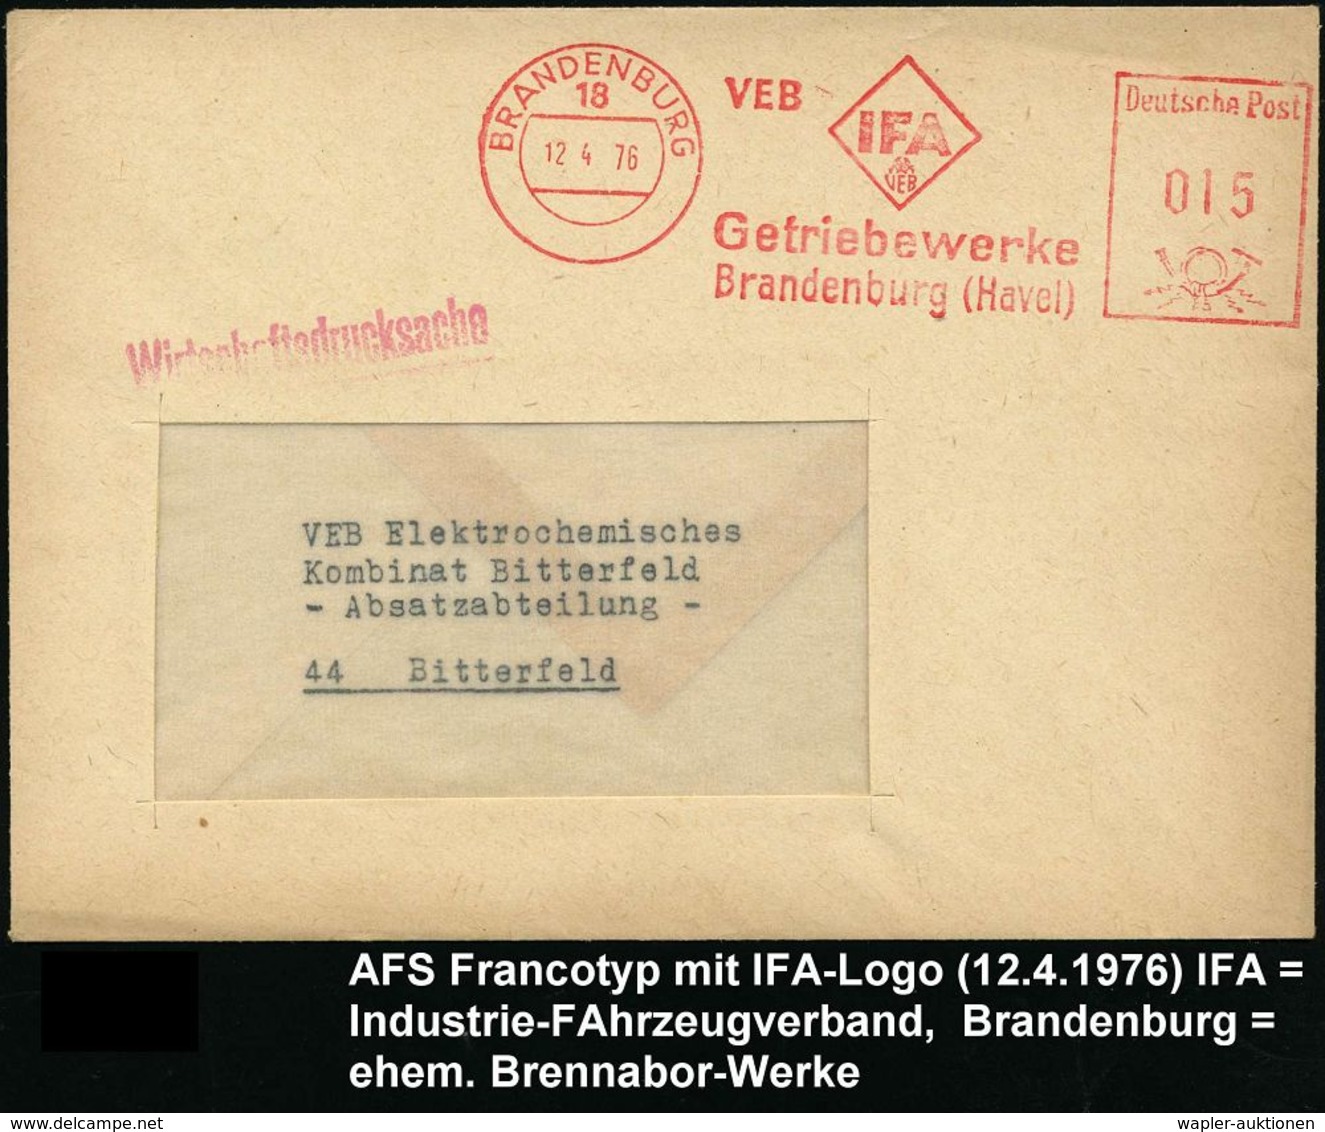 AUTOHERSTELLER D.D.R. : 18 BRANDENBURG/ VEB IFA/ VEB/ Getriebewerke 1976 (12.4.) AFS (Logo) = Ex Brennabor-Werke = Trakt - Automobili